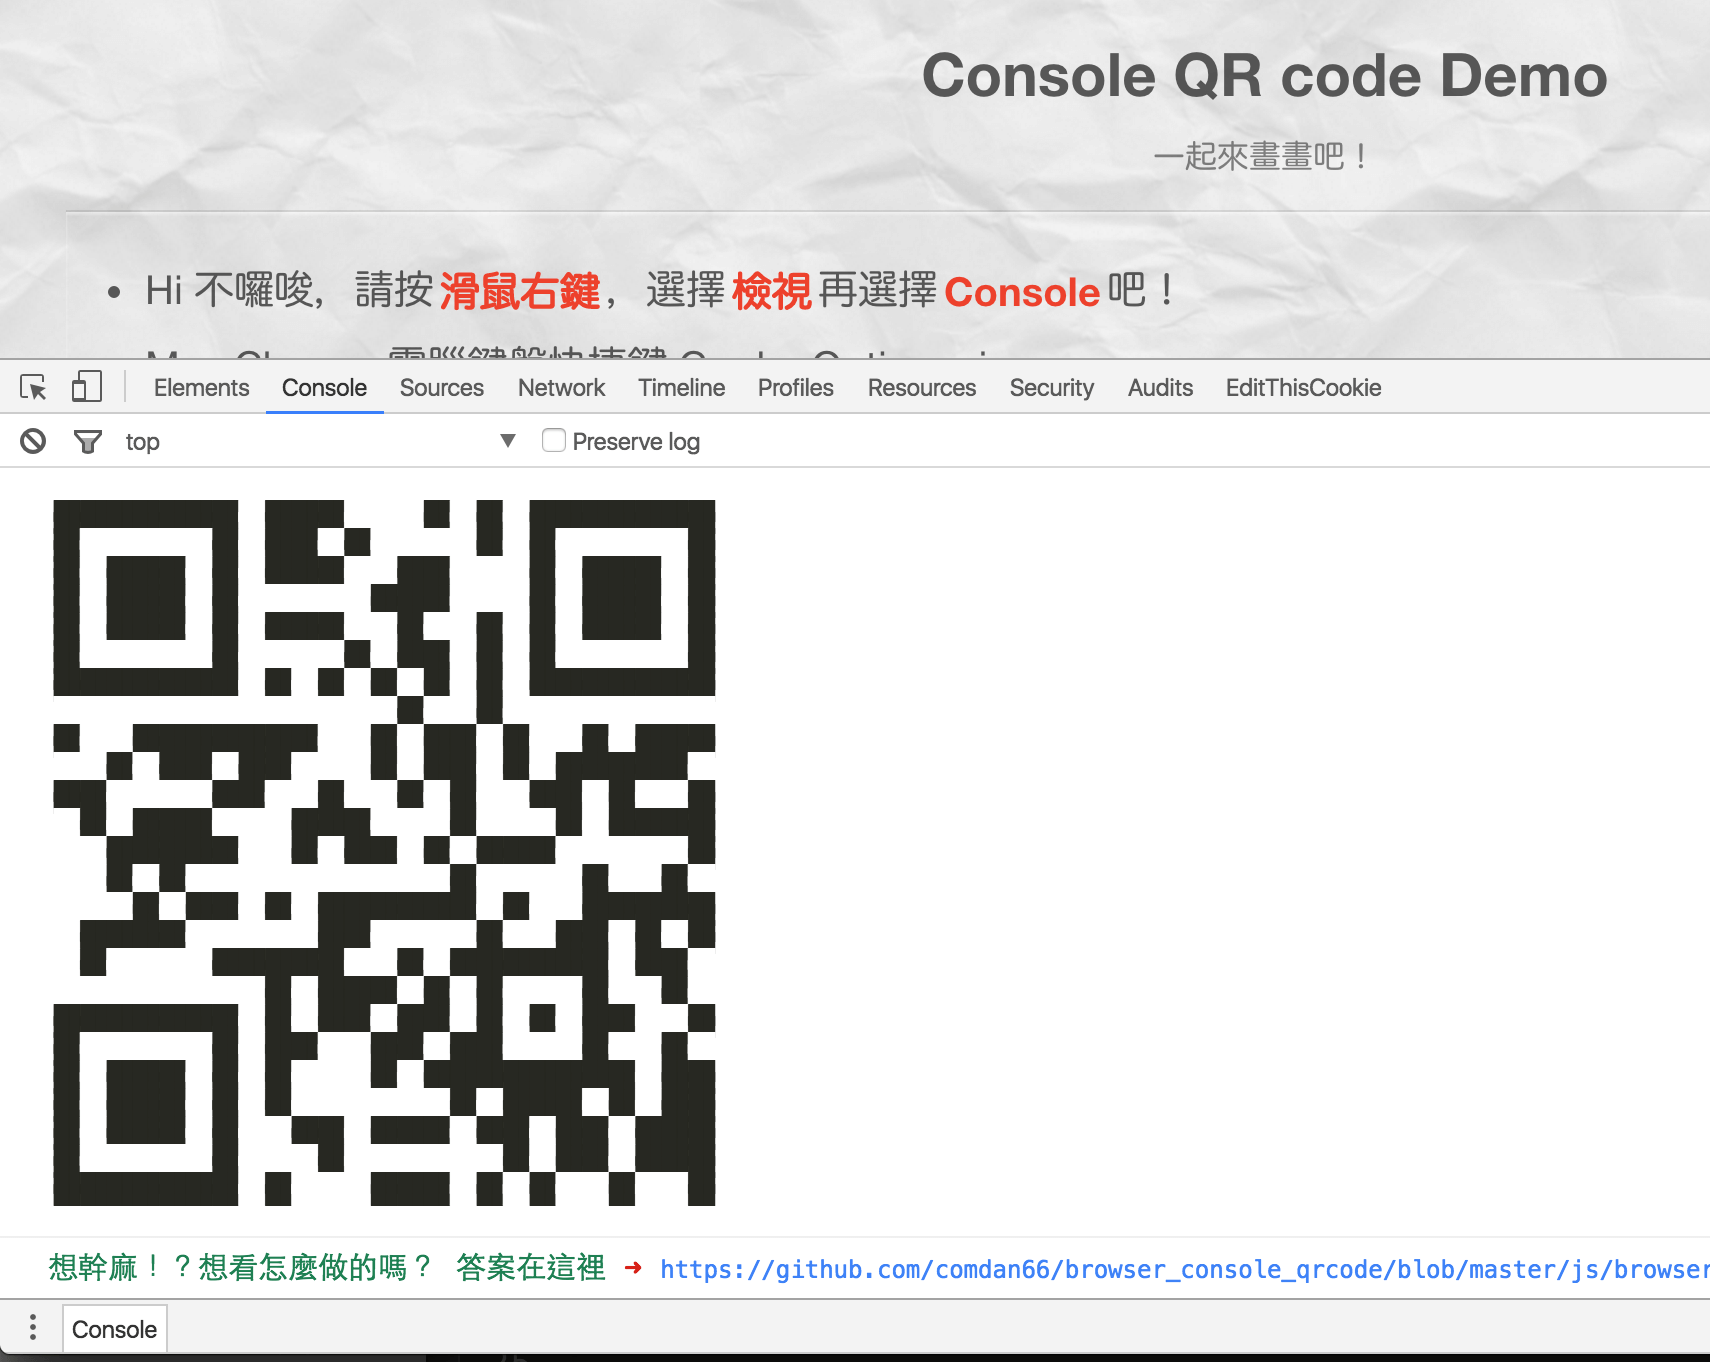 瀏覽器 Console 上畫 QR Code！Painting QR Code on the browser Console.